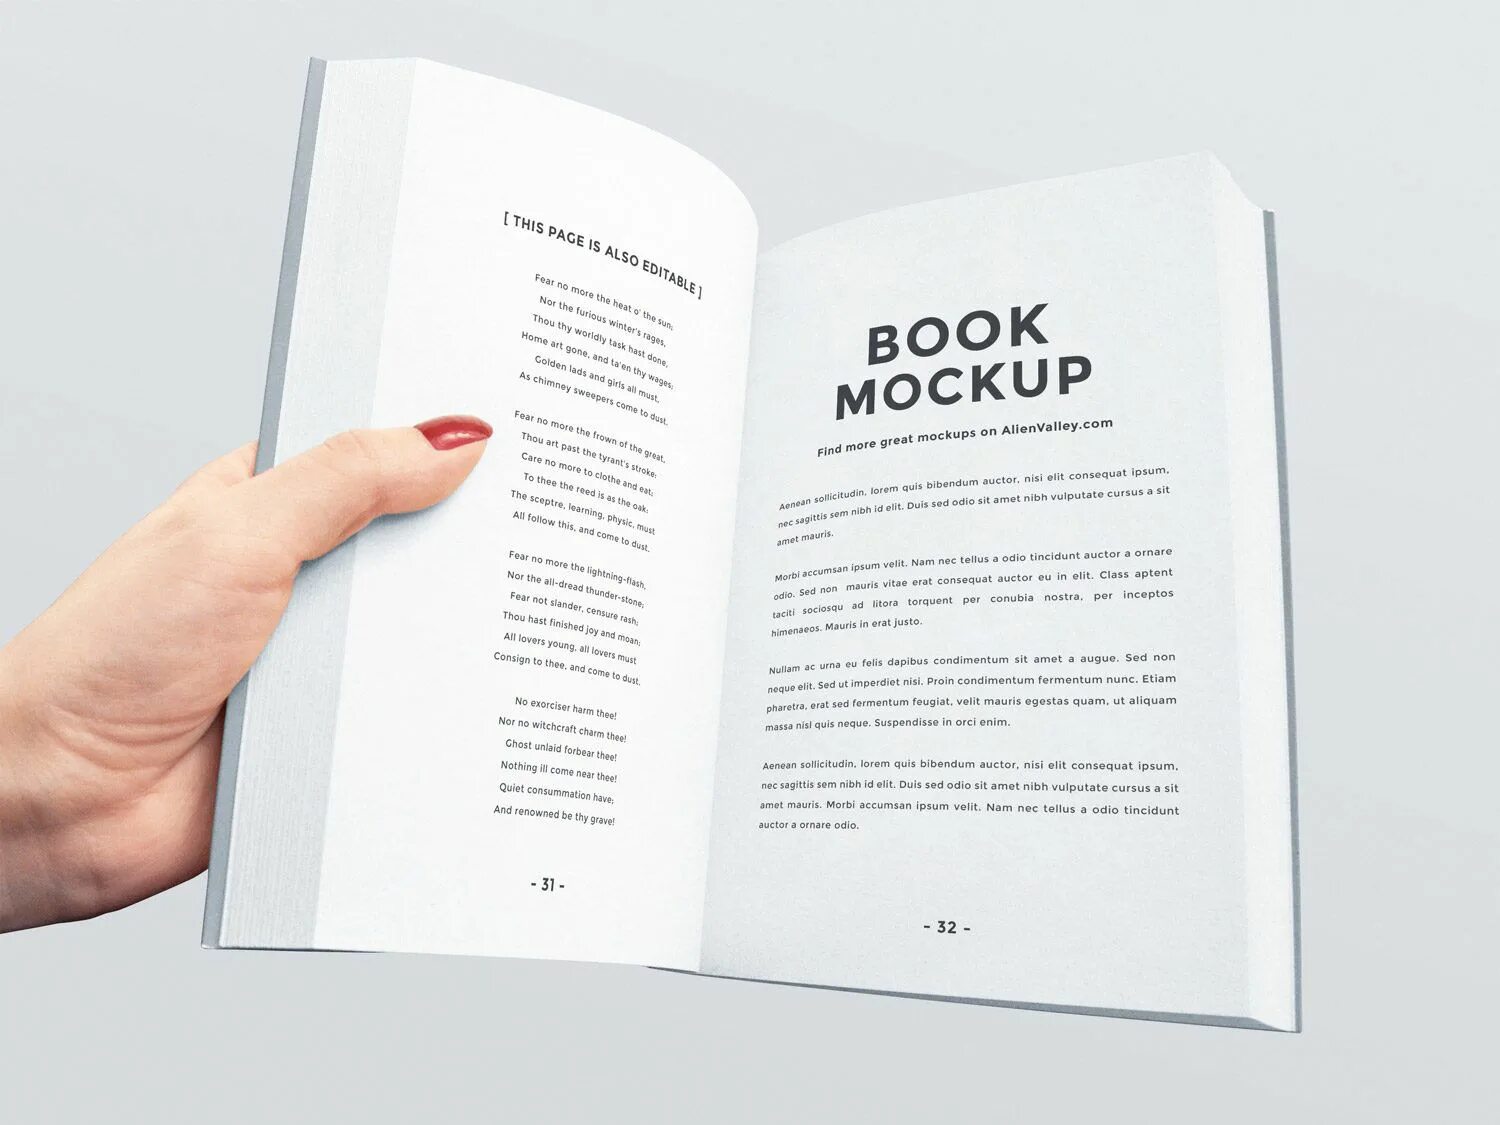 Open new book. Верстка книги. Мокап книги. Дизайн обложки книги раскрытая. Открытая книга Mockup.